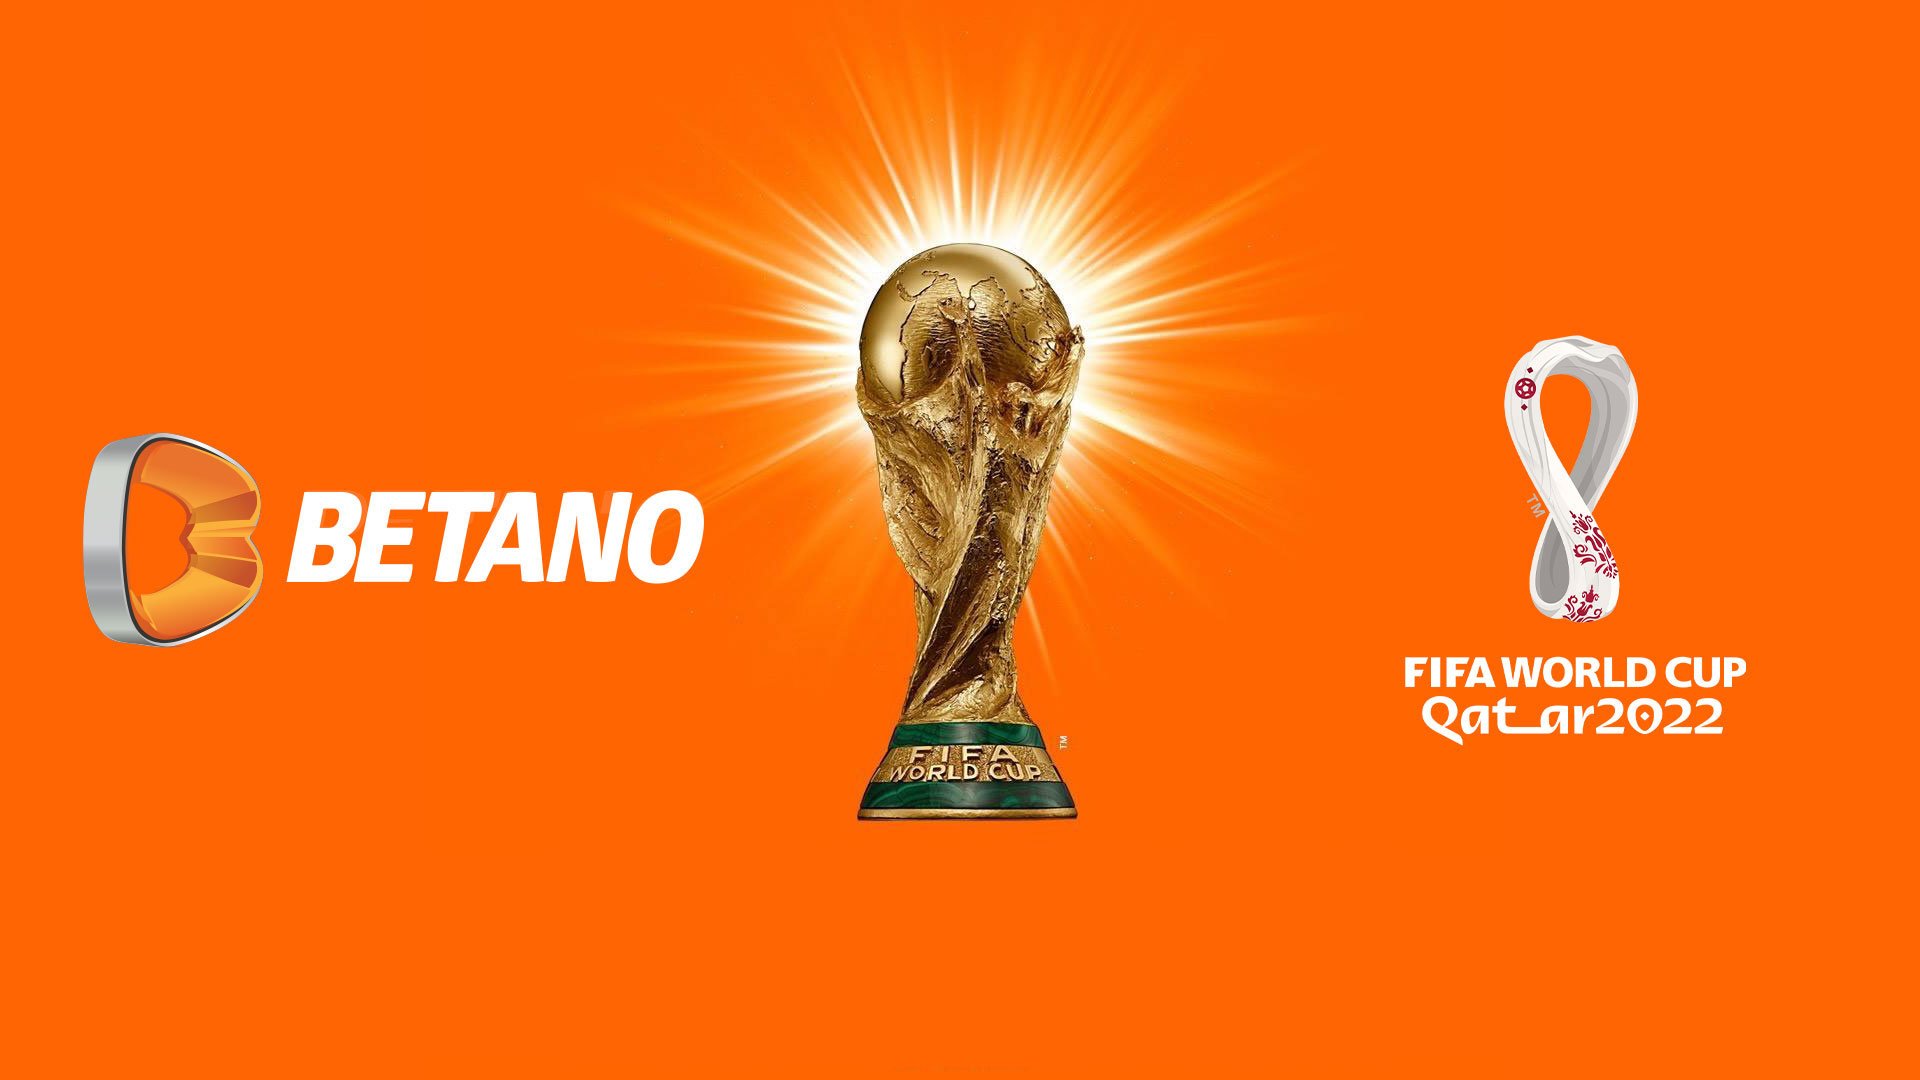 Betano са официален спонсор на FIFA и Световното първенство по футбол в Катар